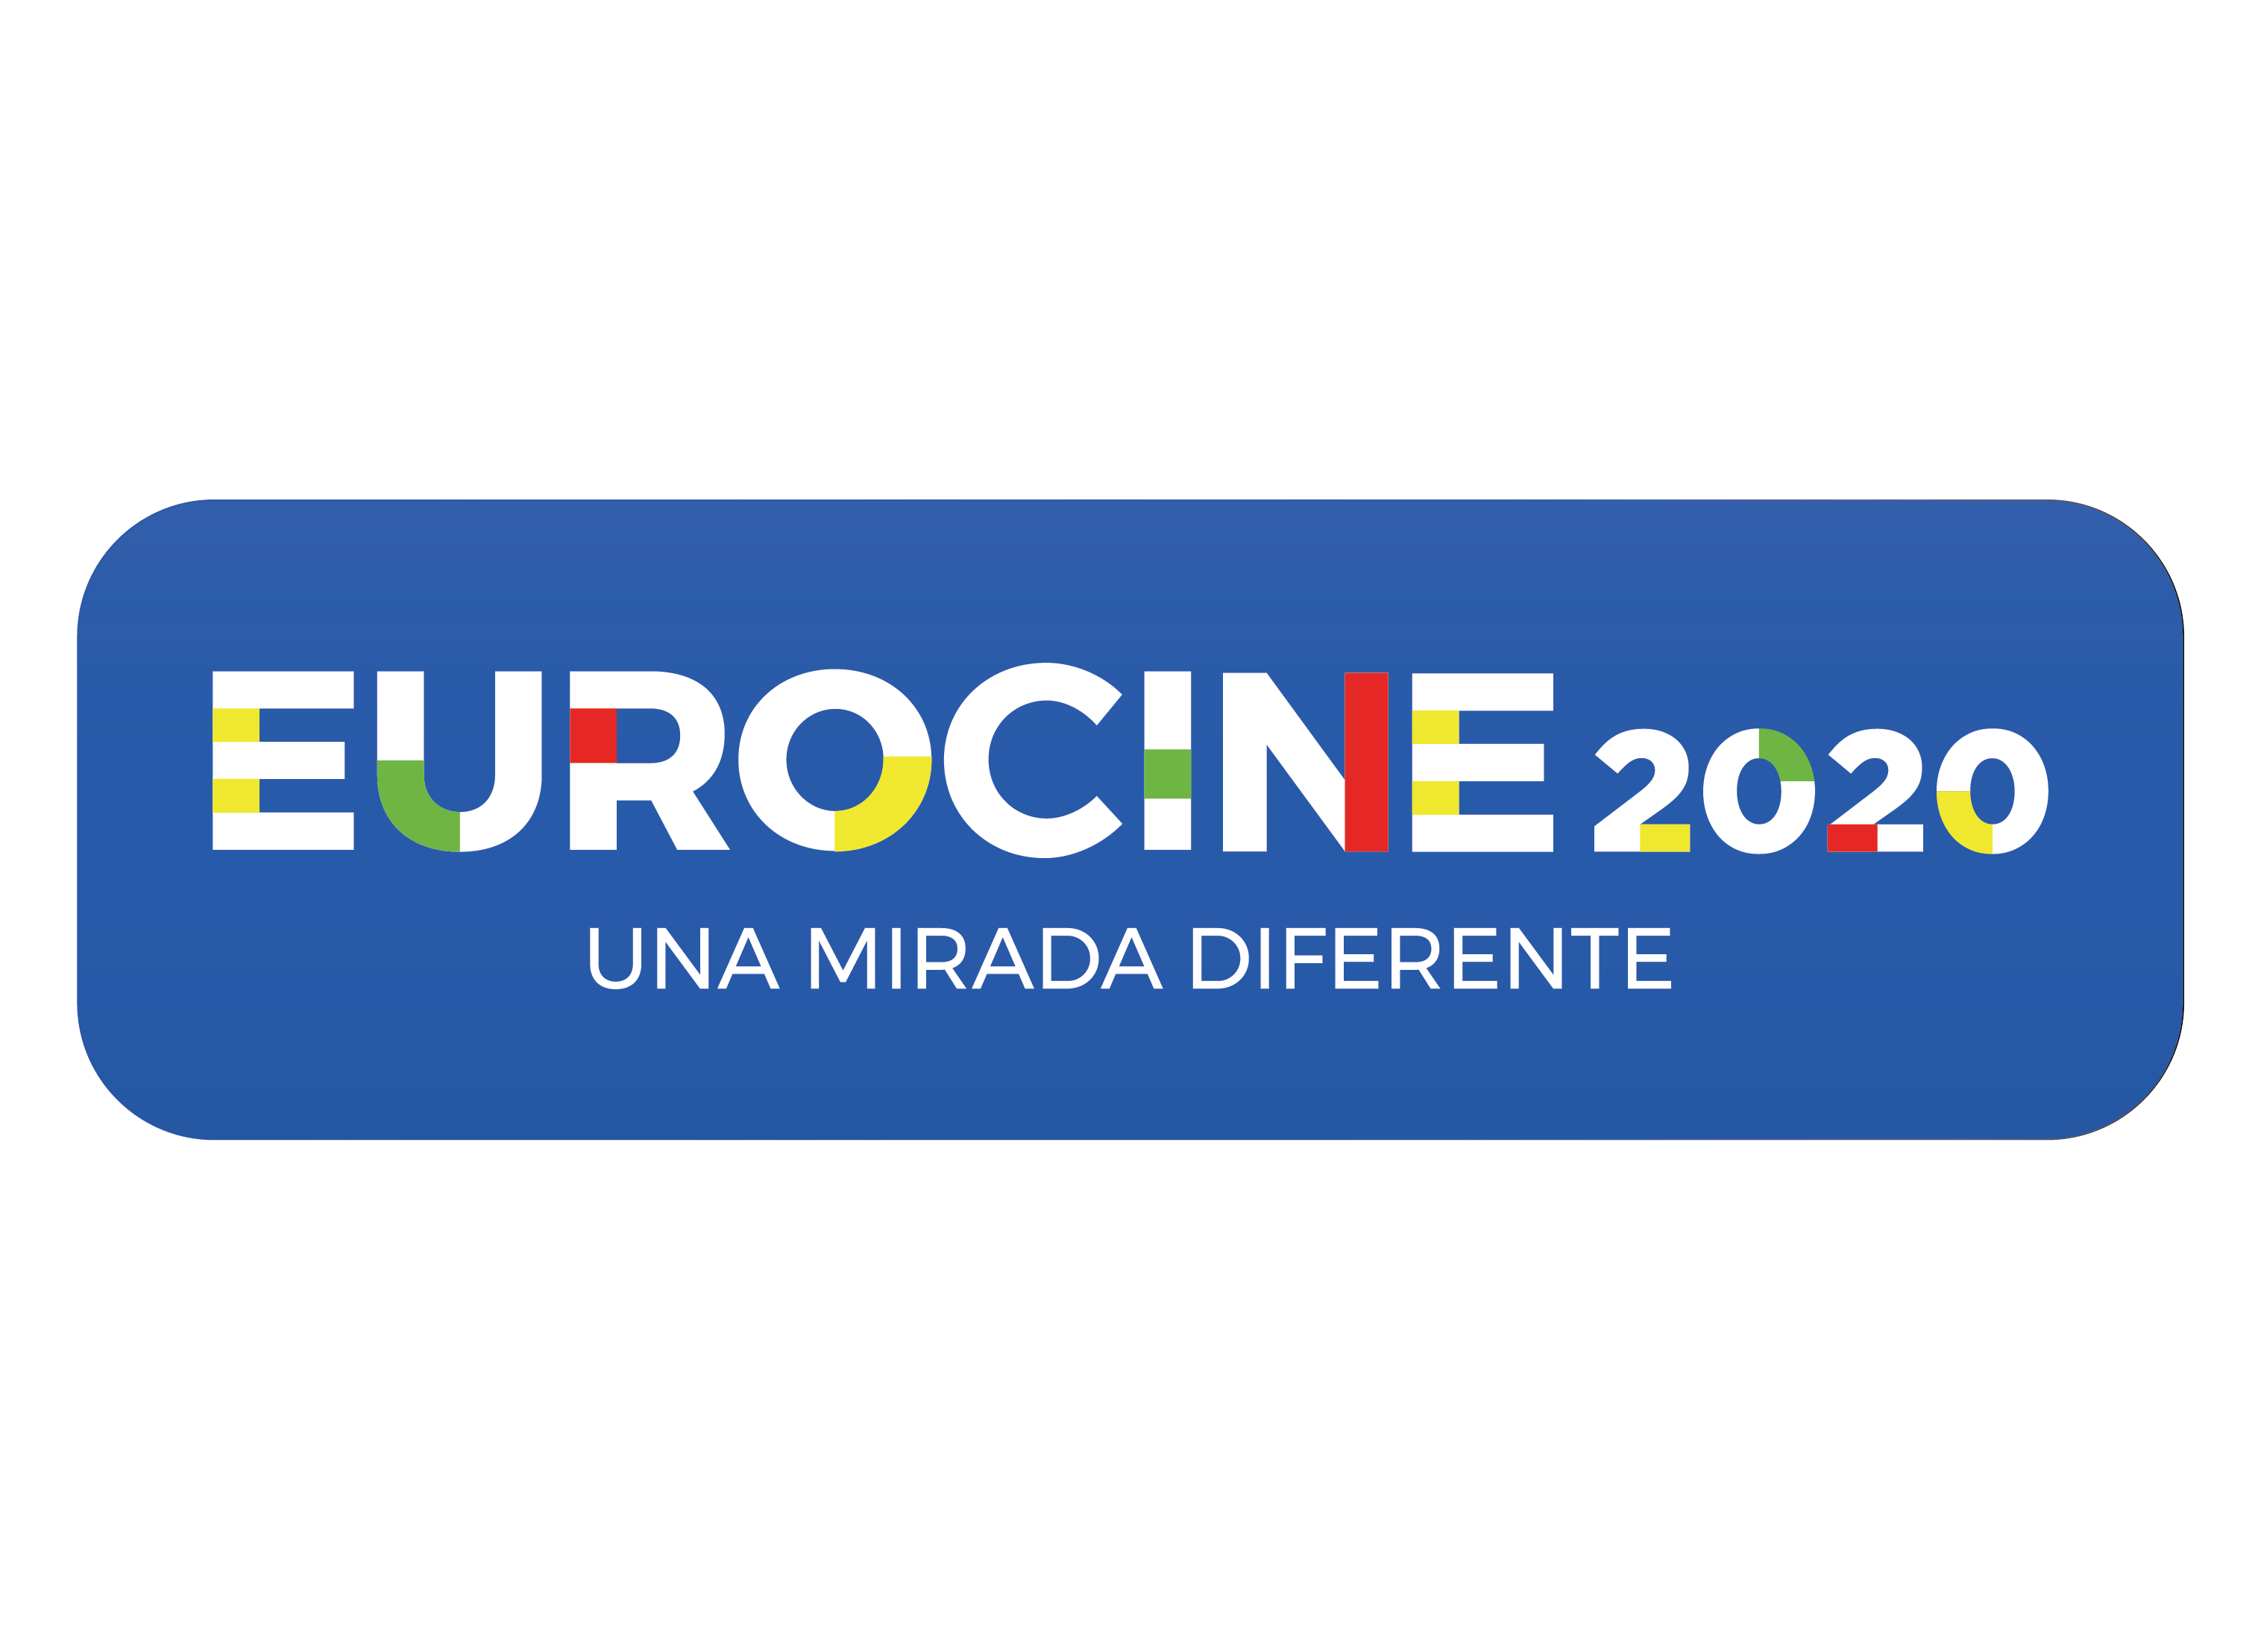 El festival de Eurocine inició en el año 2000 impulsado por la Delegación de la Unión Europea en Guatemala y varias embajadas de los Estados Miembros de la Unión Europea acreditadas ante el país. (Foto Prensa Libre: Cortesía Eurocine)